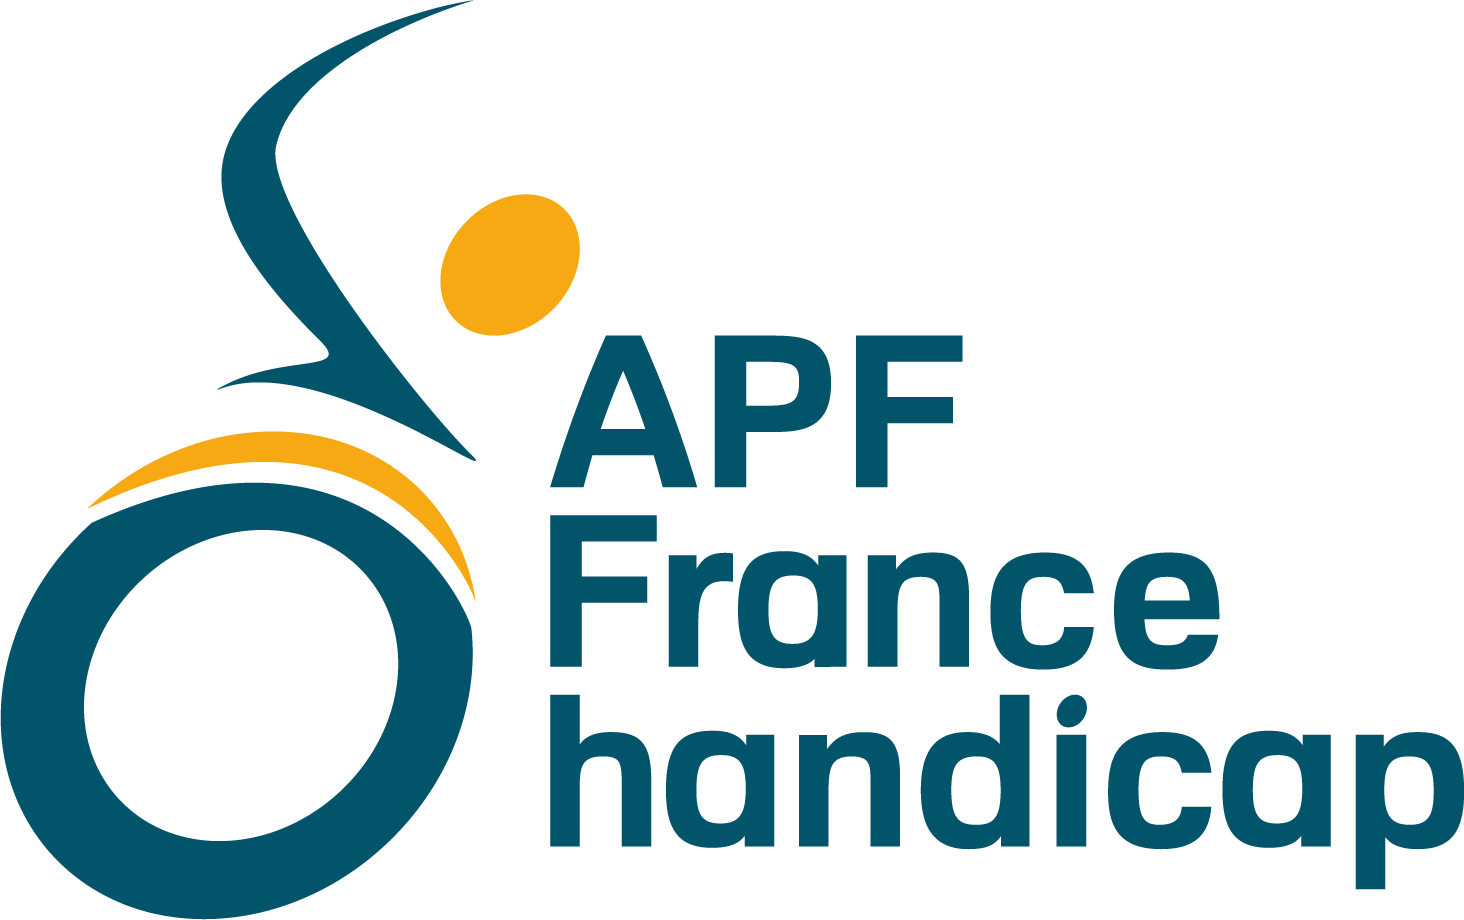 Photo de APF France handicap - Délégation du Puy-de-Dôme à CLERMONT FERRAND 63100